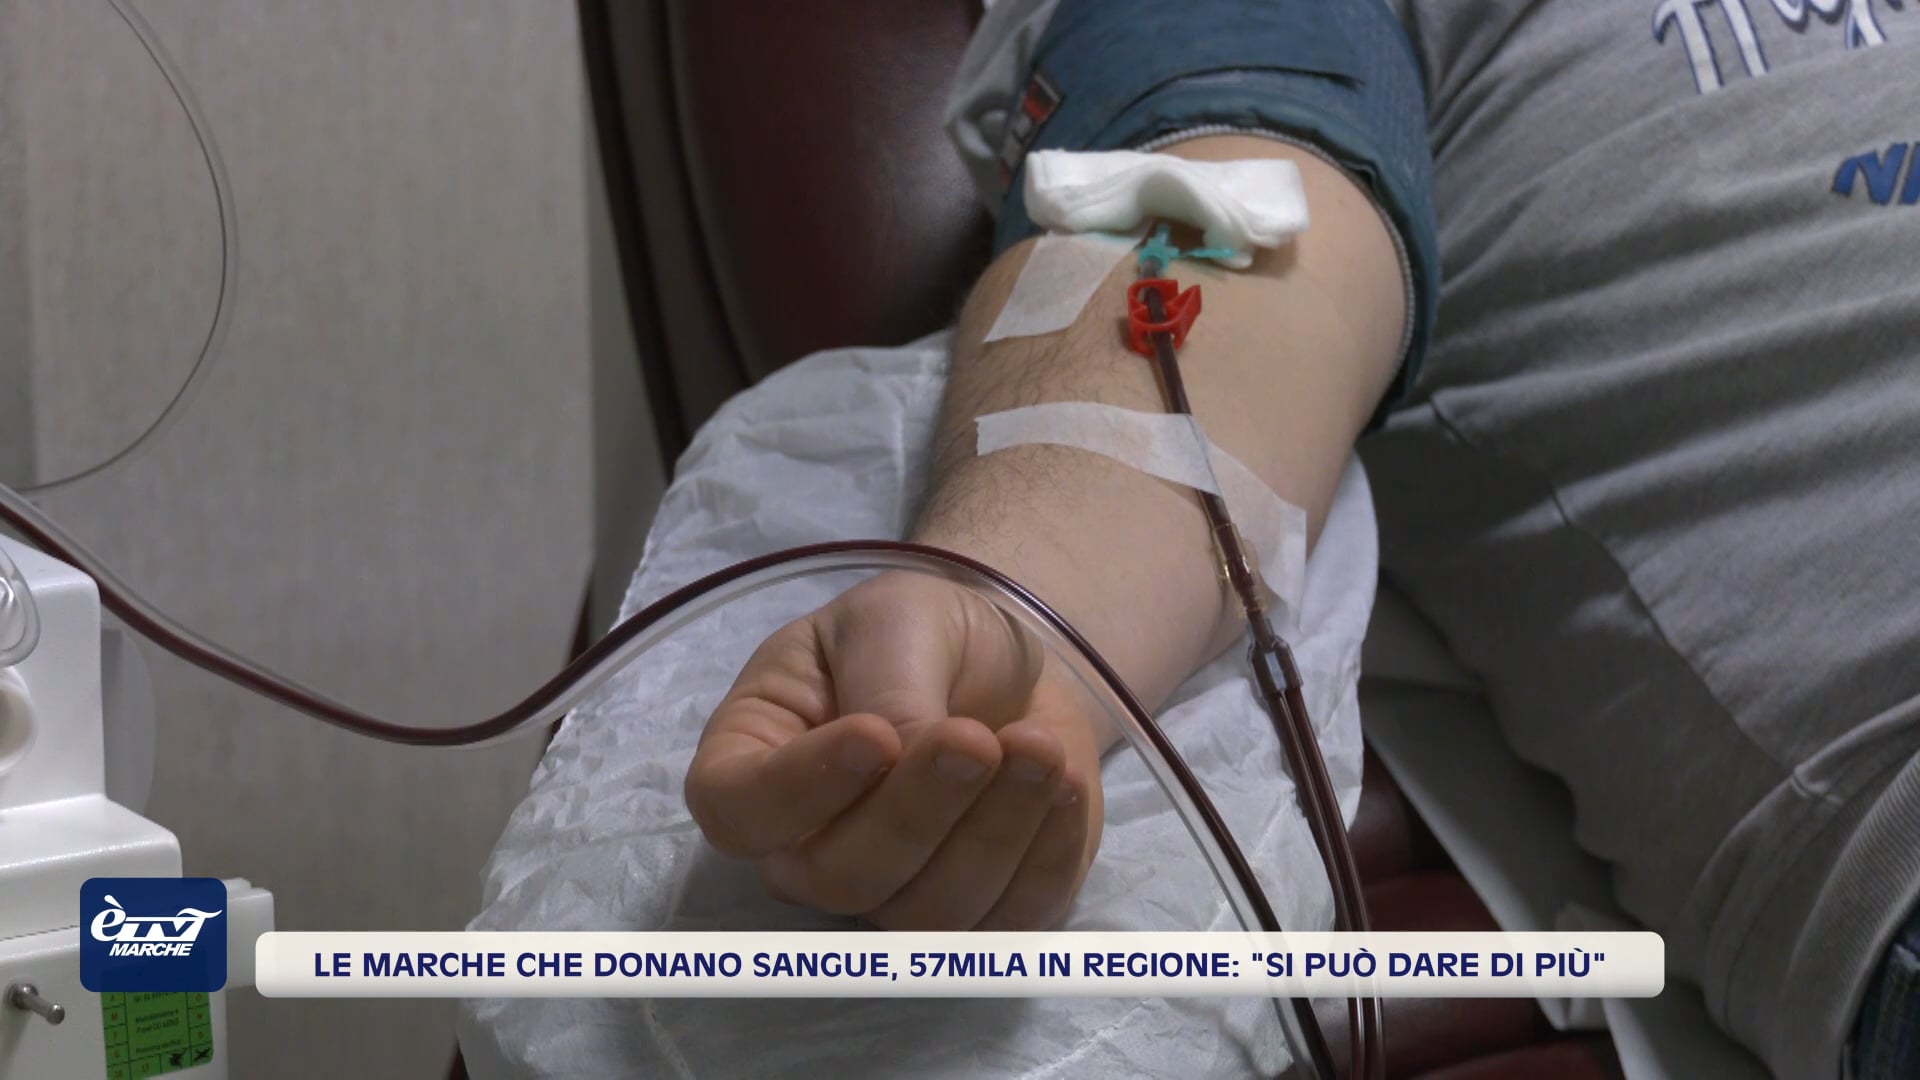 Le Marche che donano sangue, 57mila in regione: 